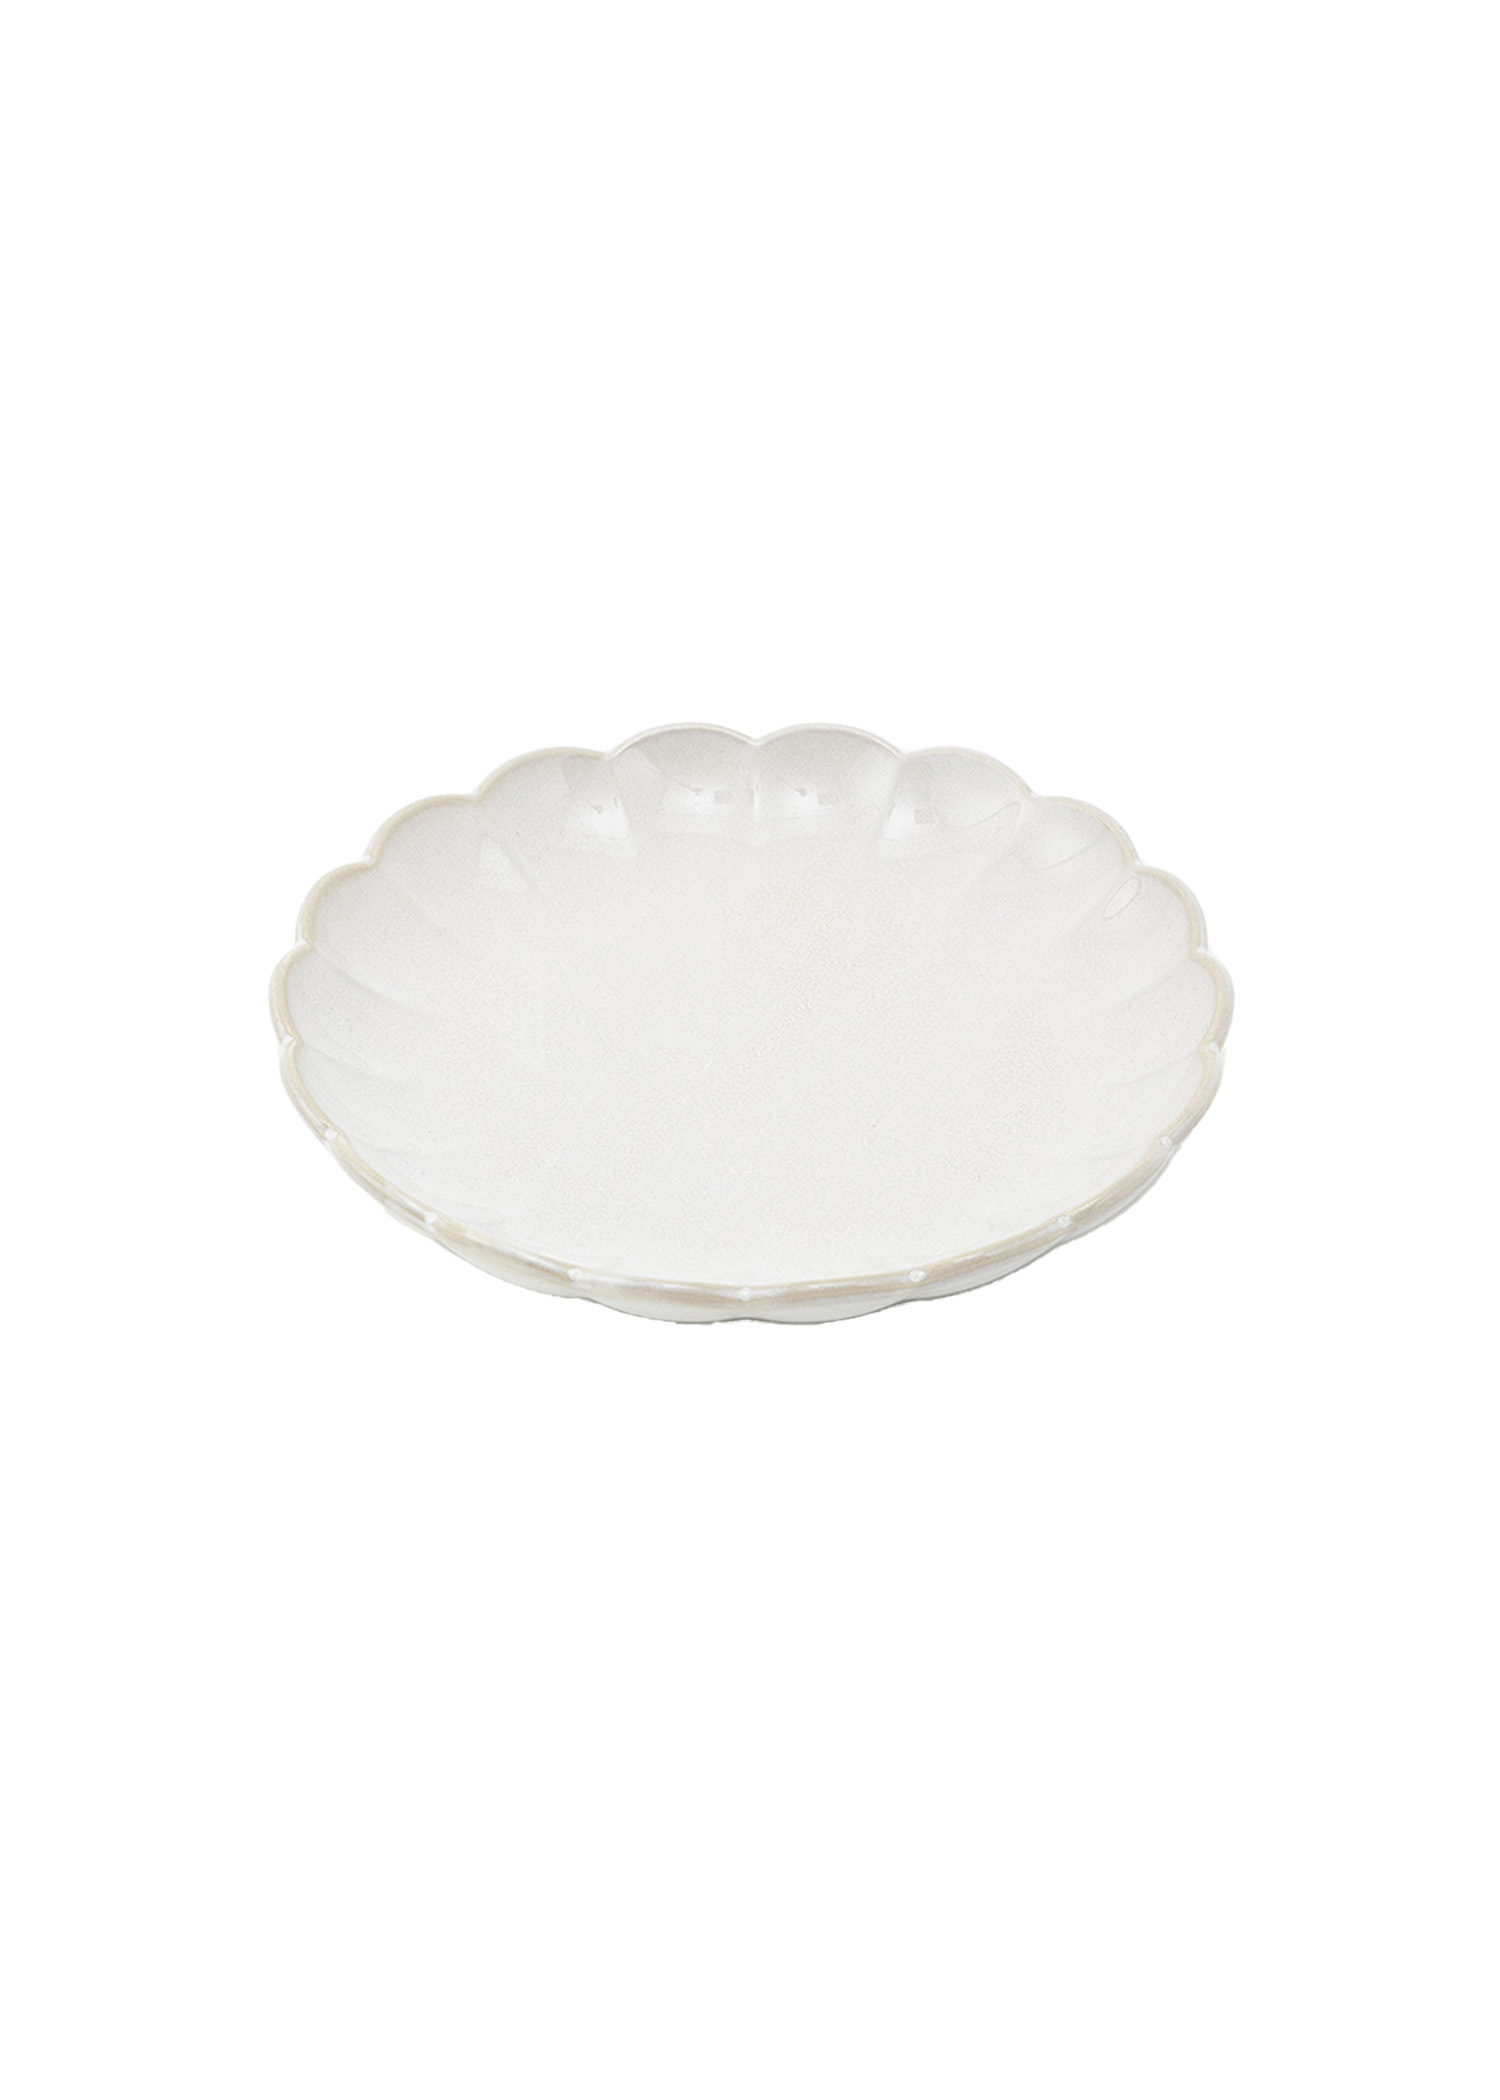 White stoneware assiette Image 0